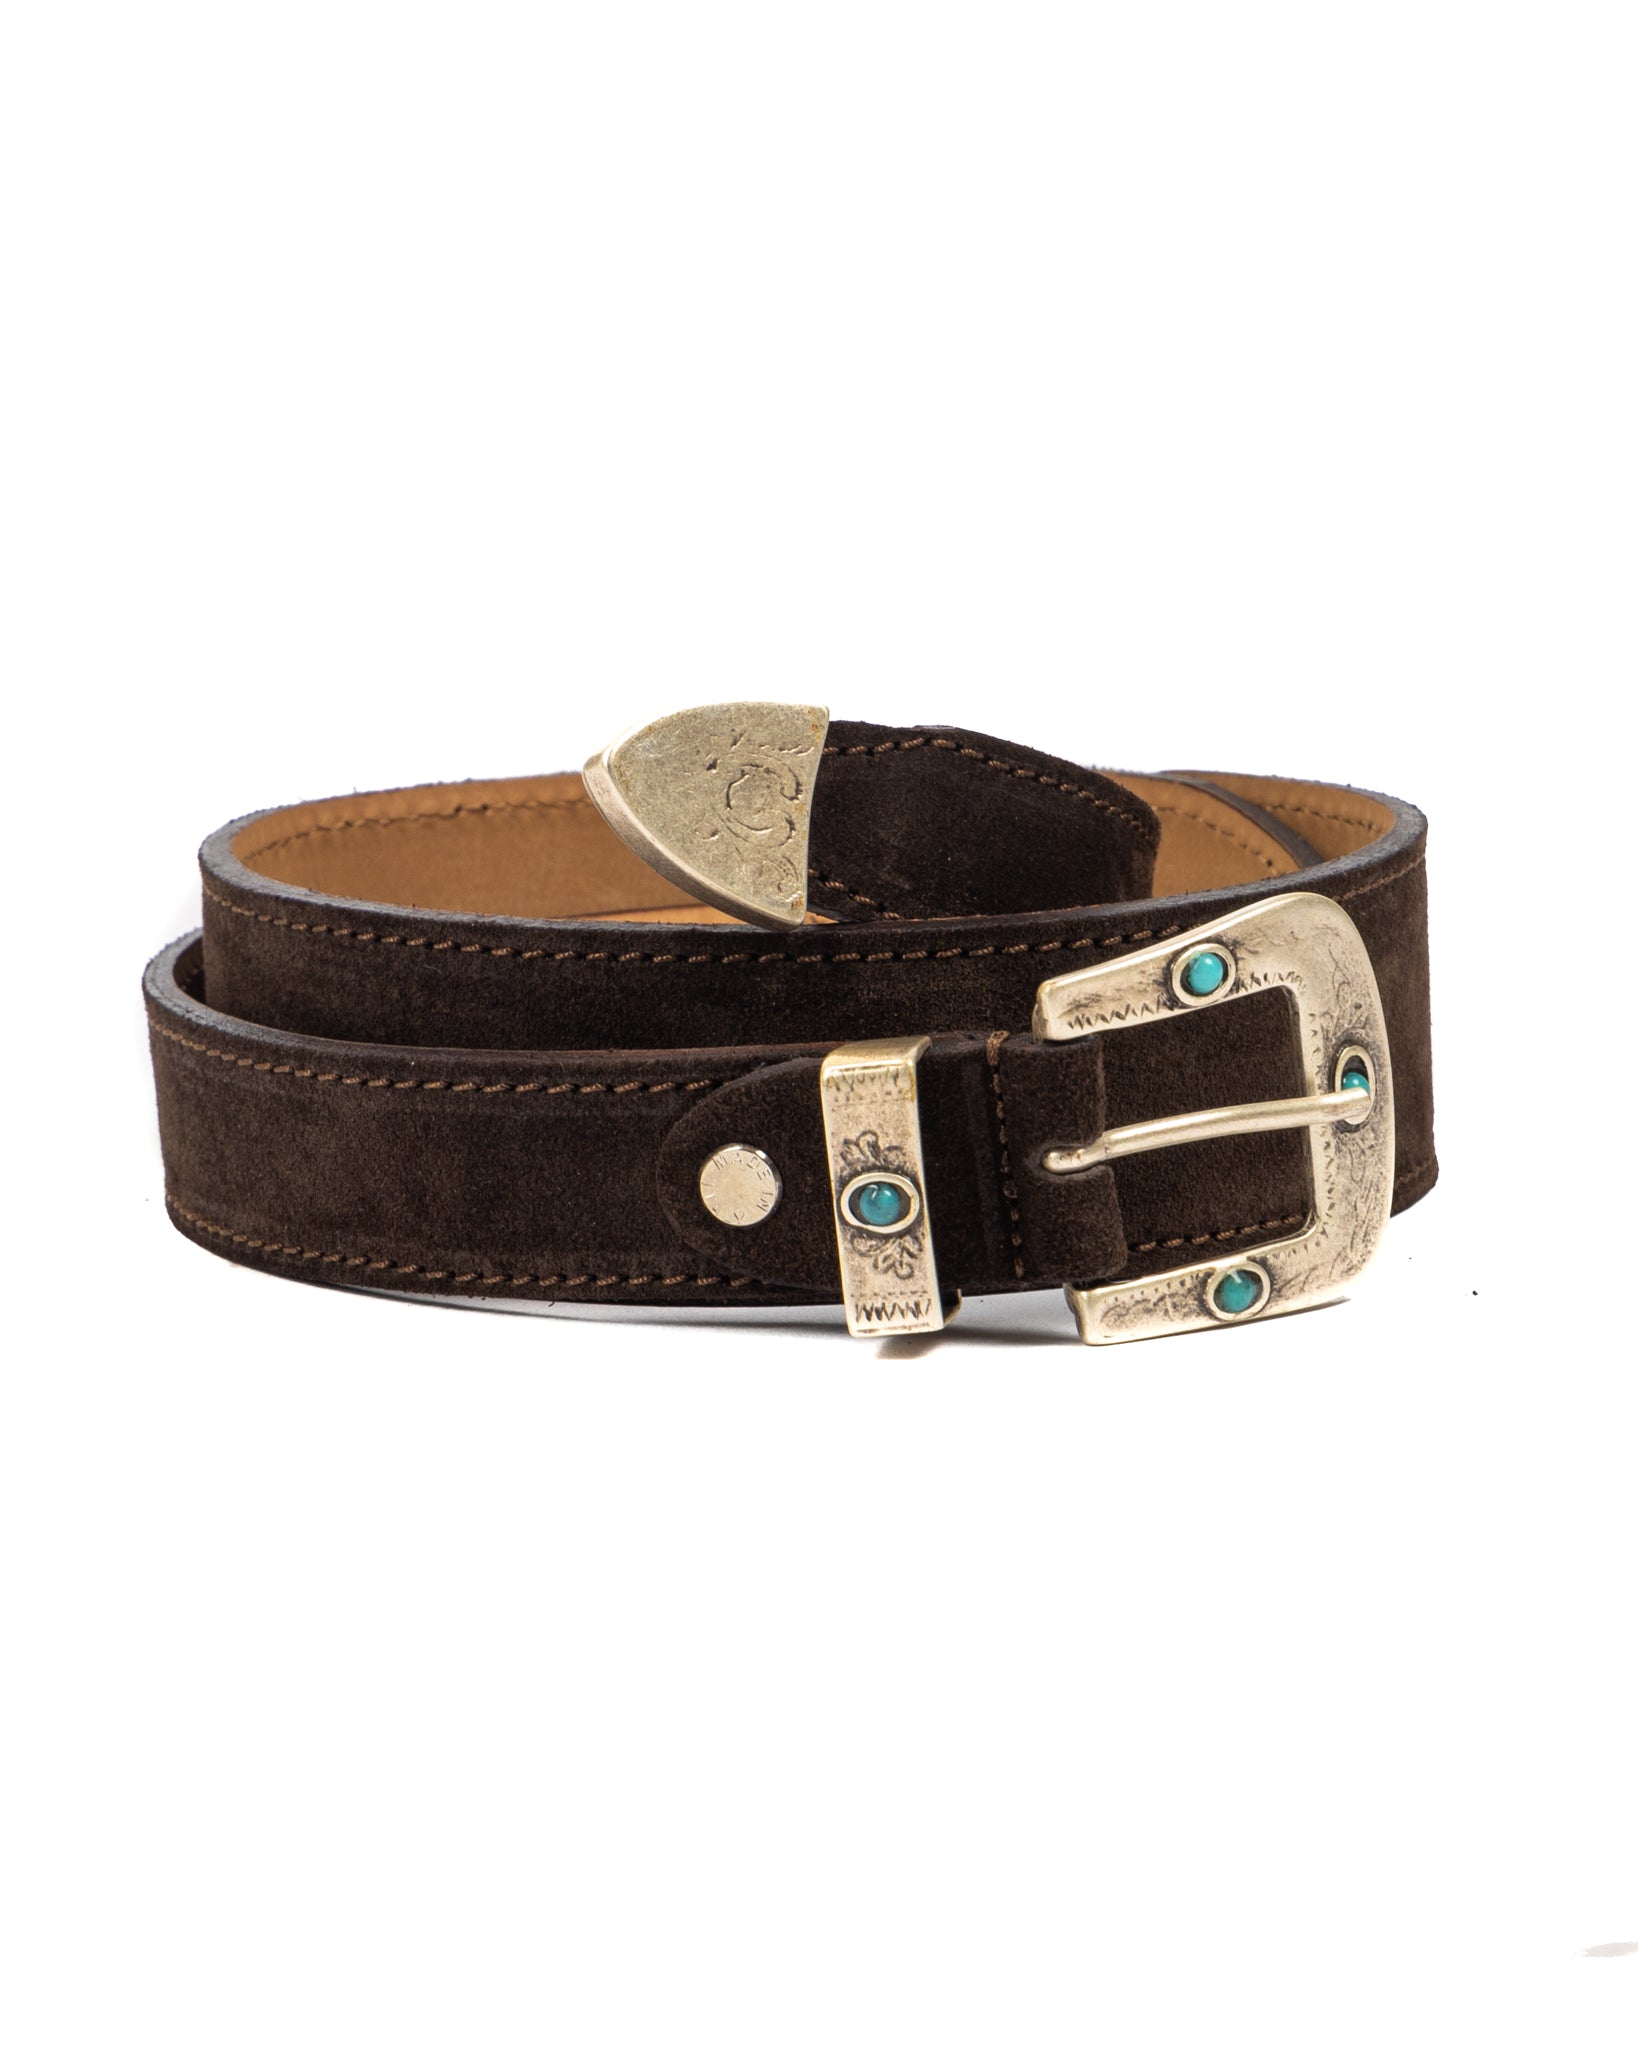 Quirico - dark brown jewel belt in suede